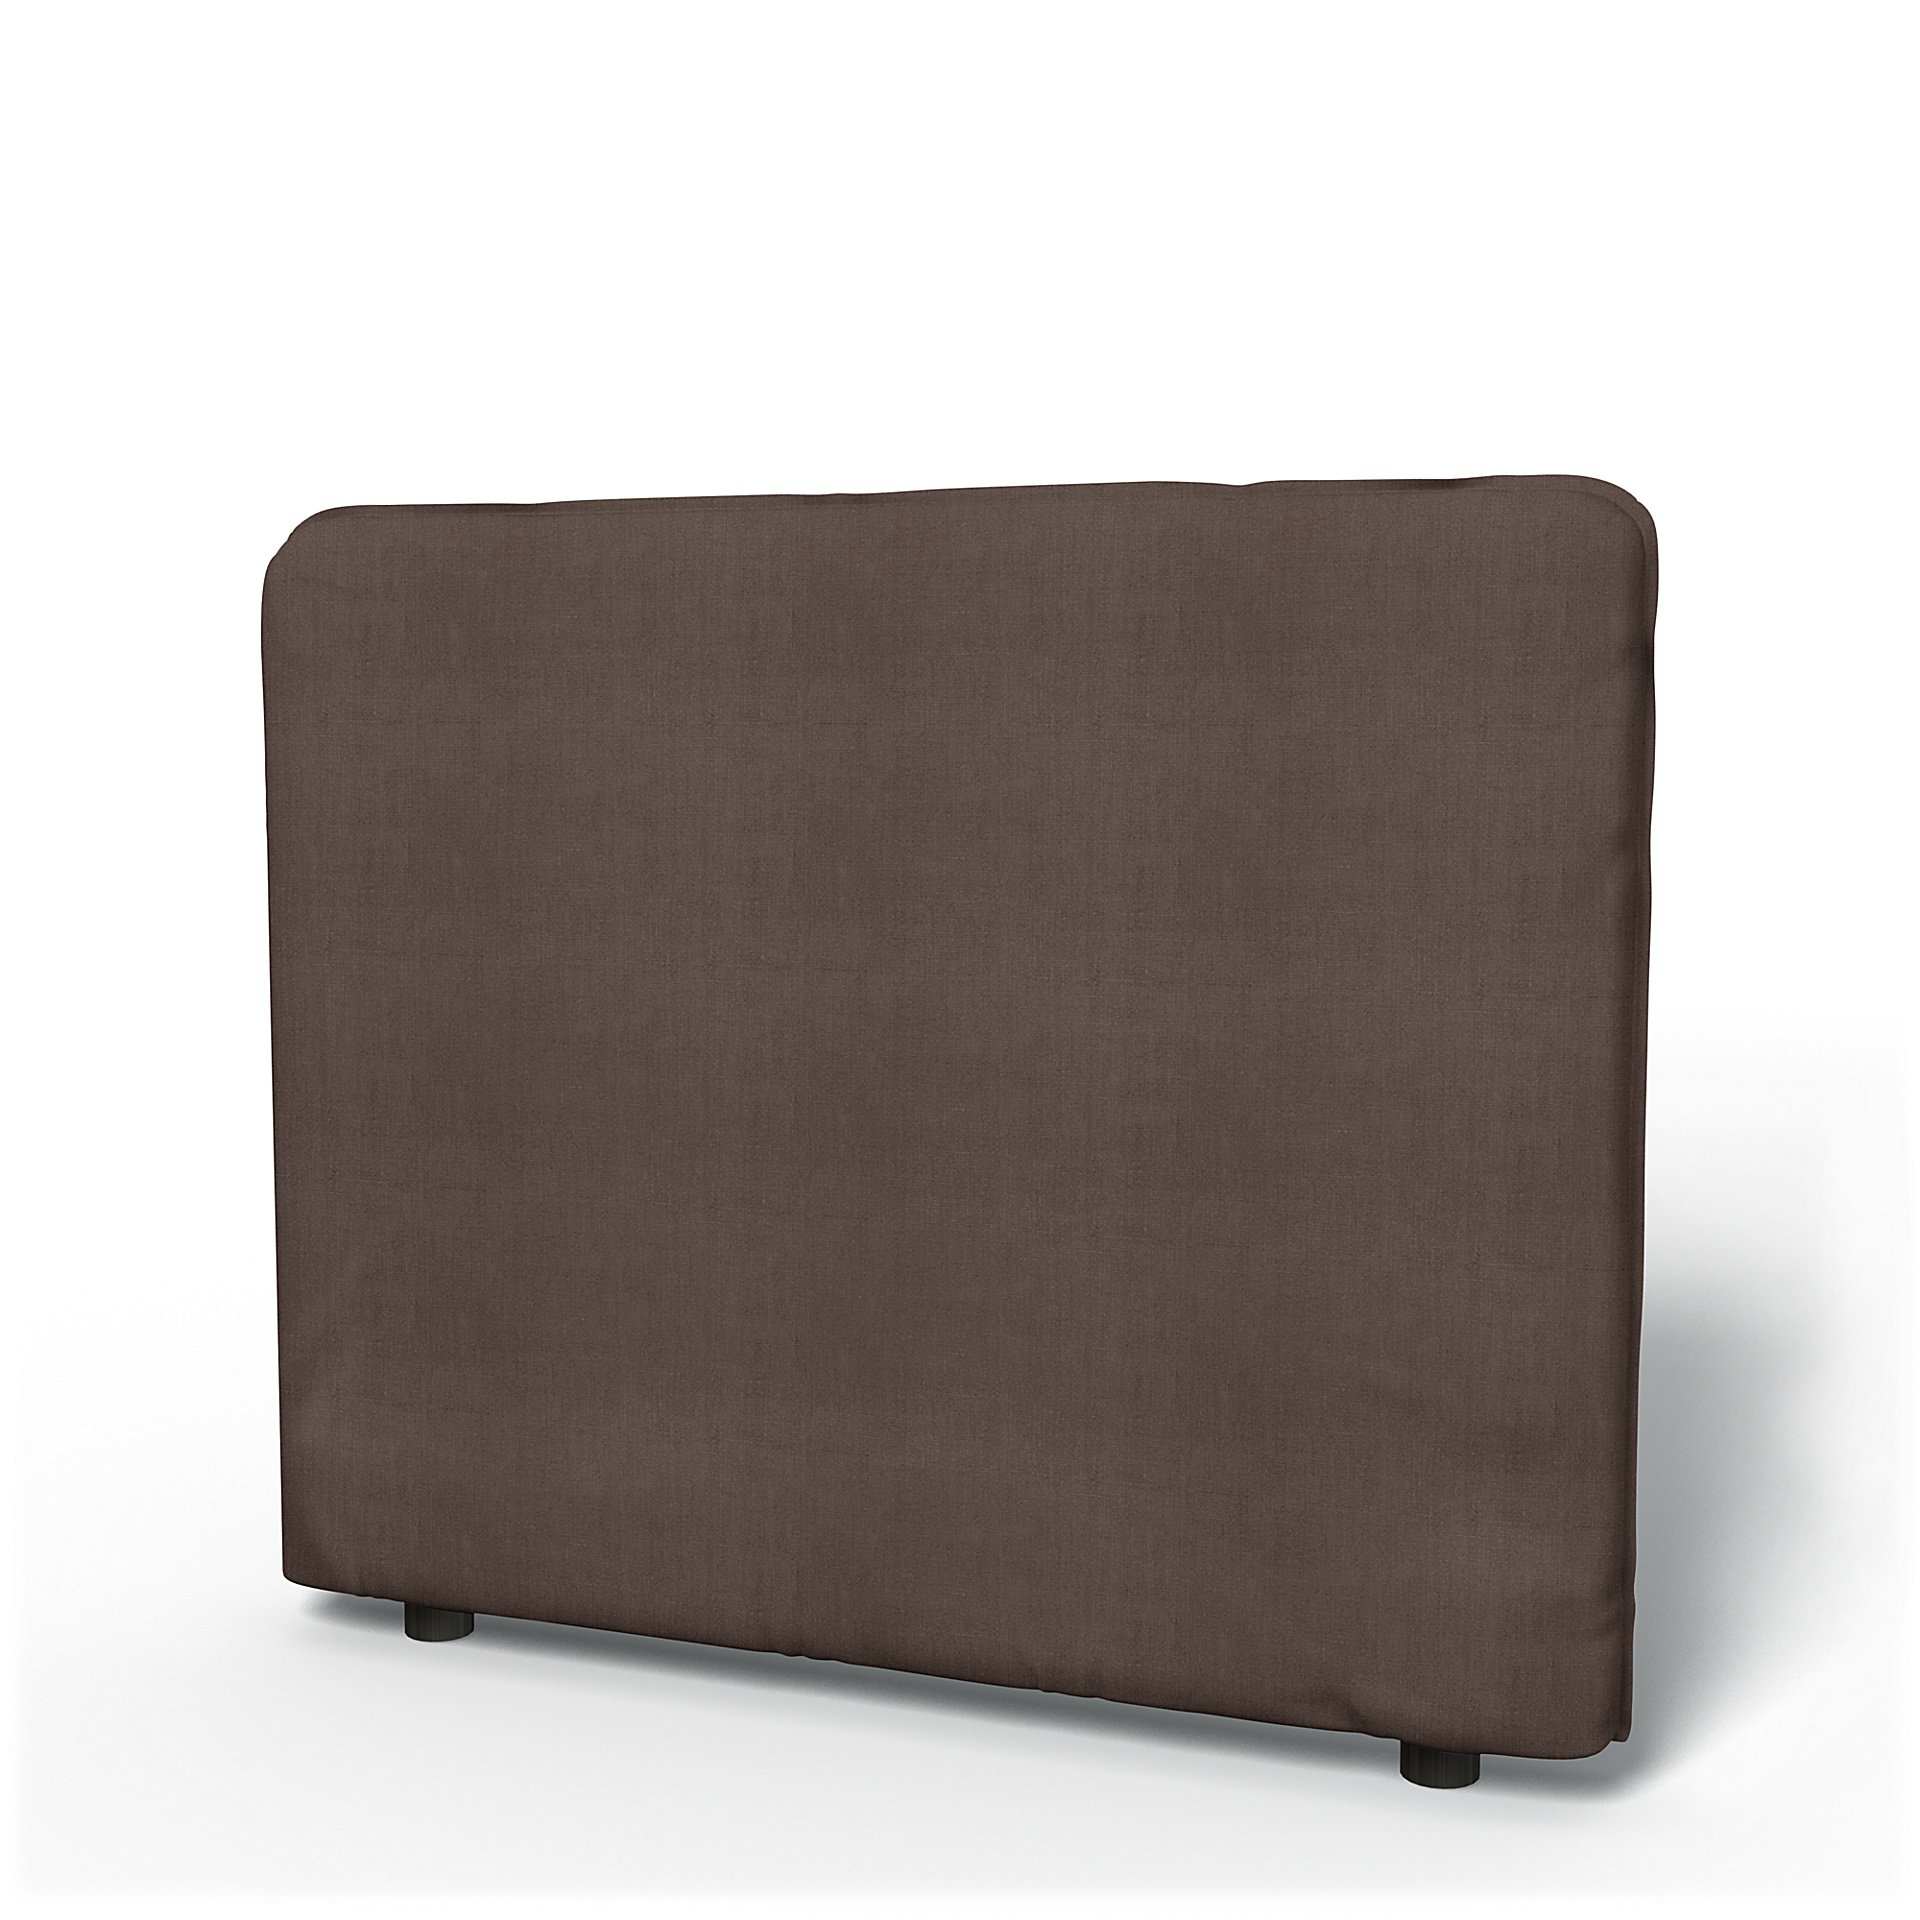 IKEA - Vallentuna Low Backrest Cover 100x80cm 39x32in, Cocoa, Linen - Bemz